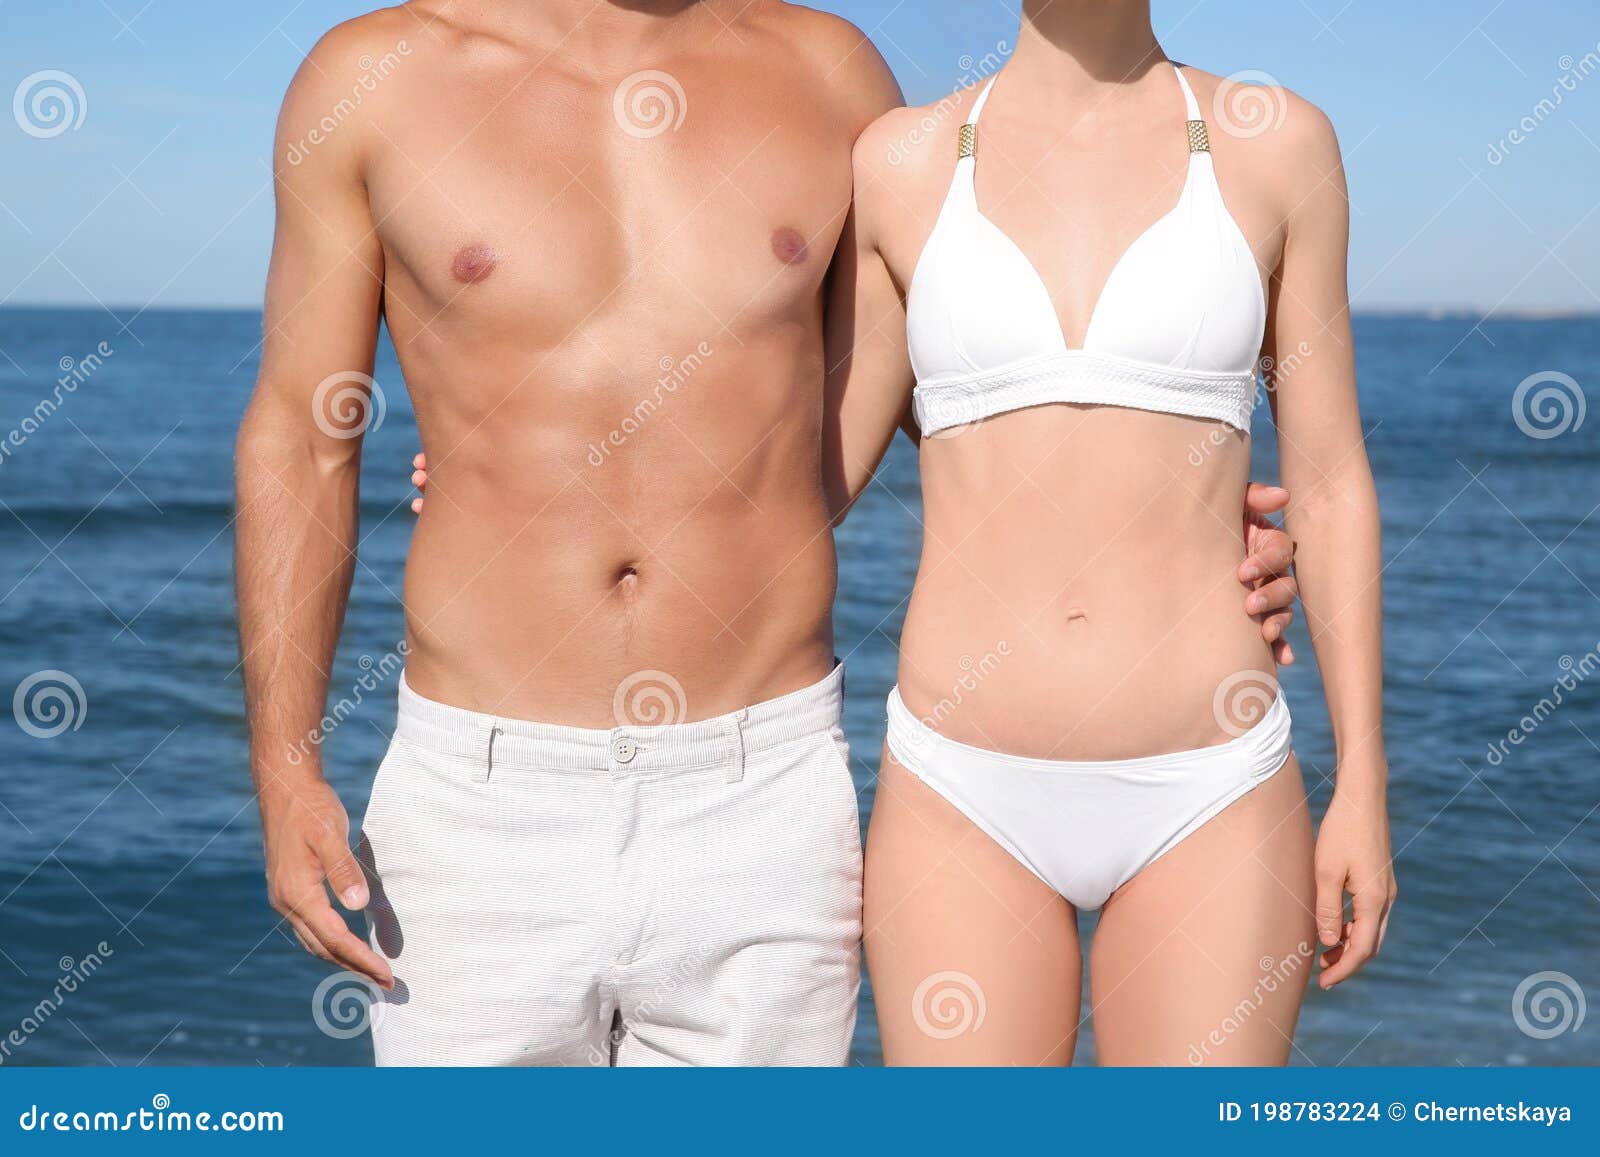 Woman in Bikini and Her Boyfriend on Beach, Closeup